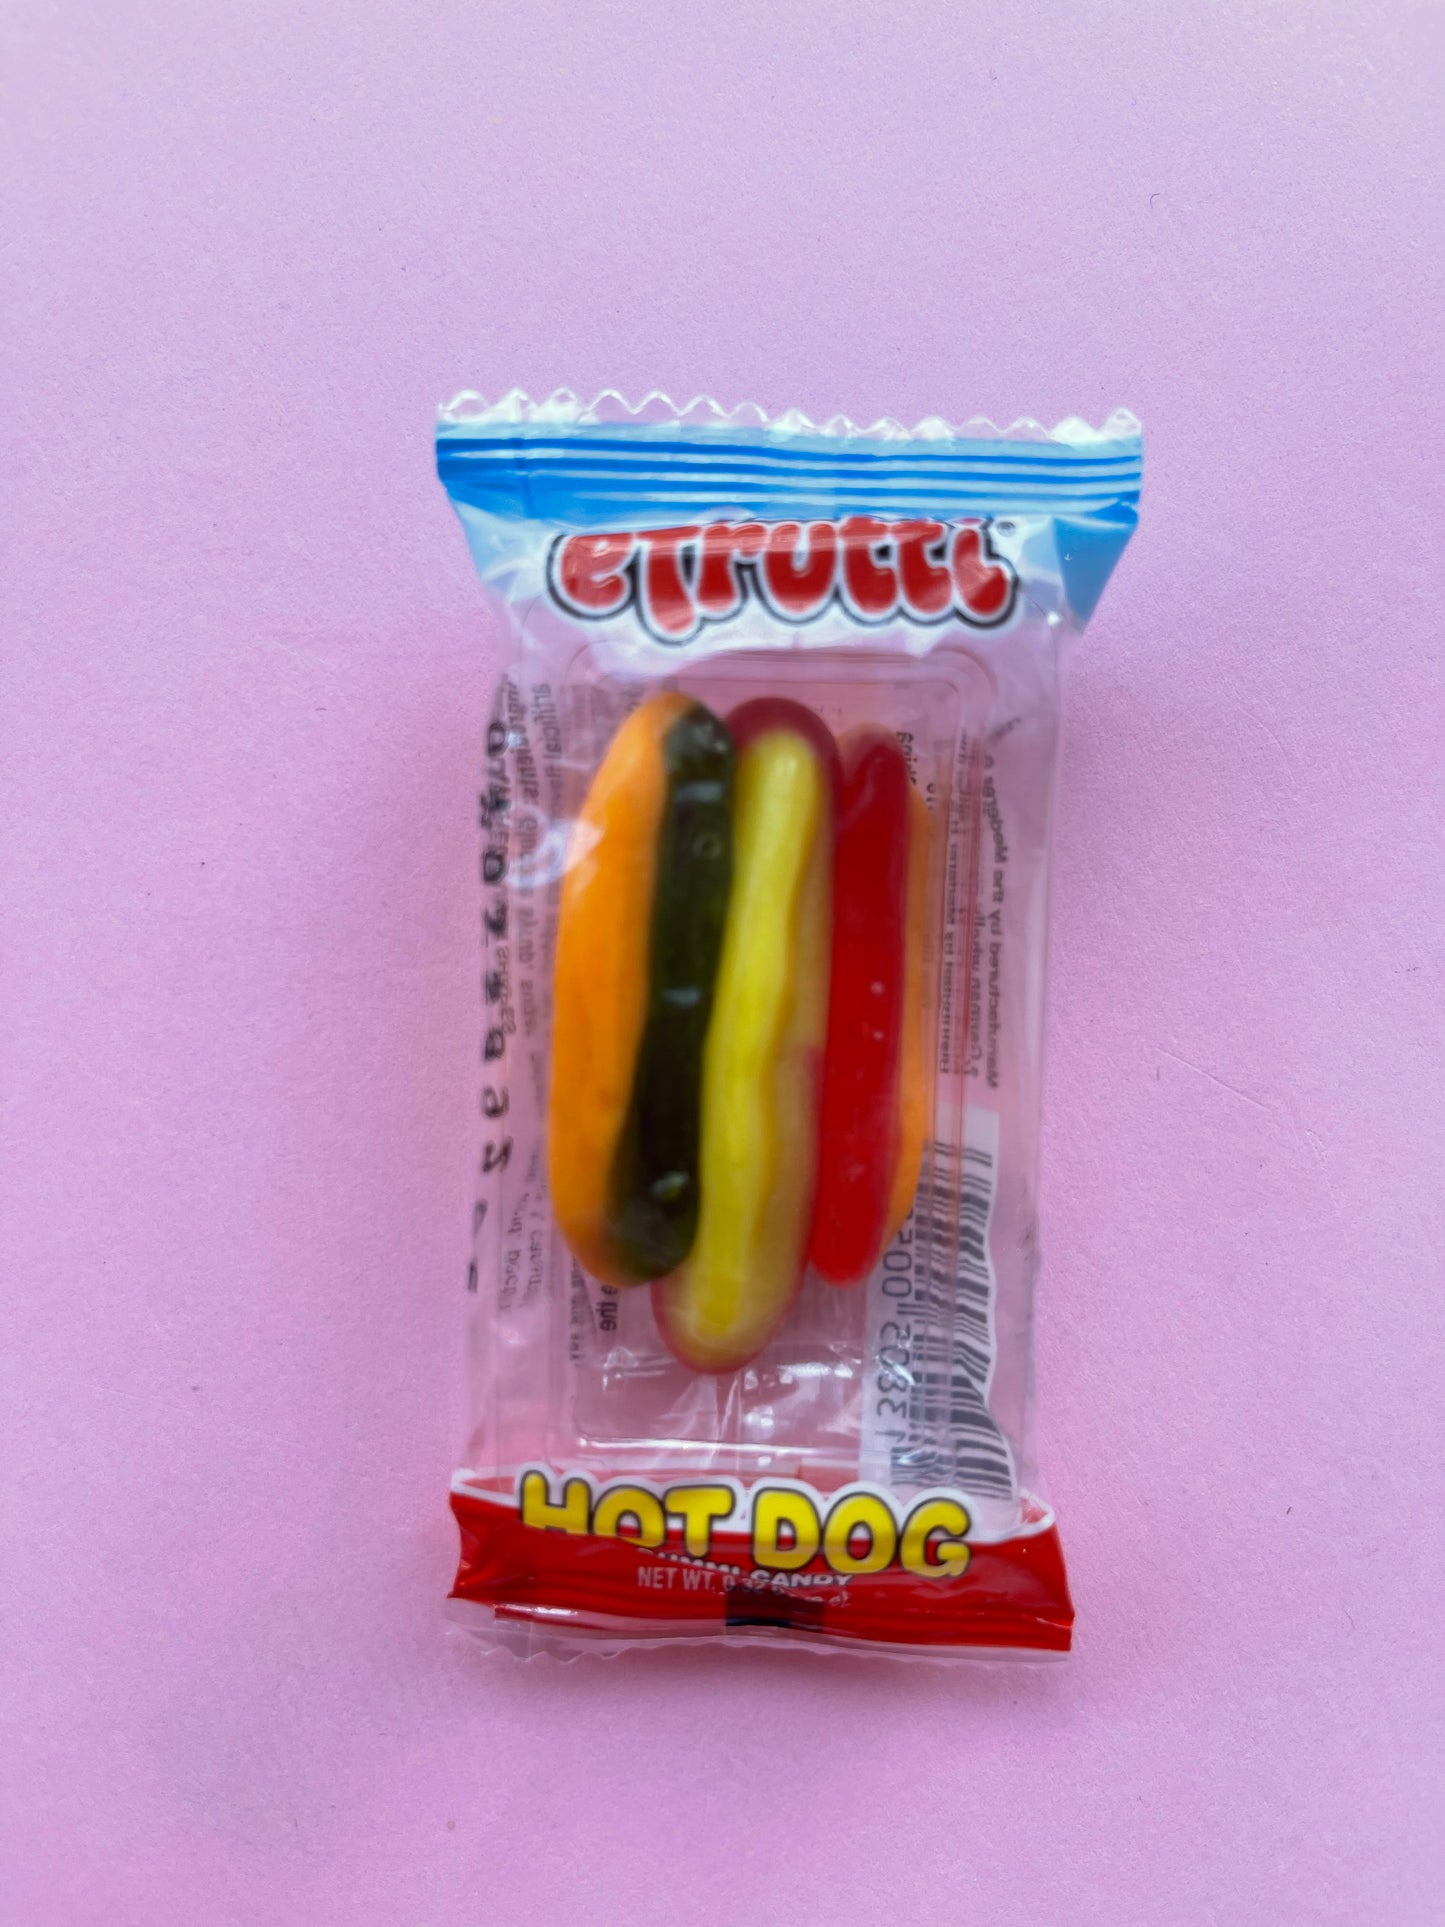 eFrutti - Hot Dog